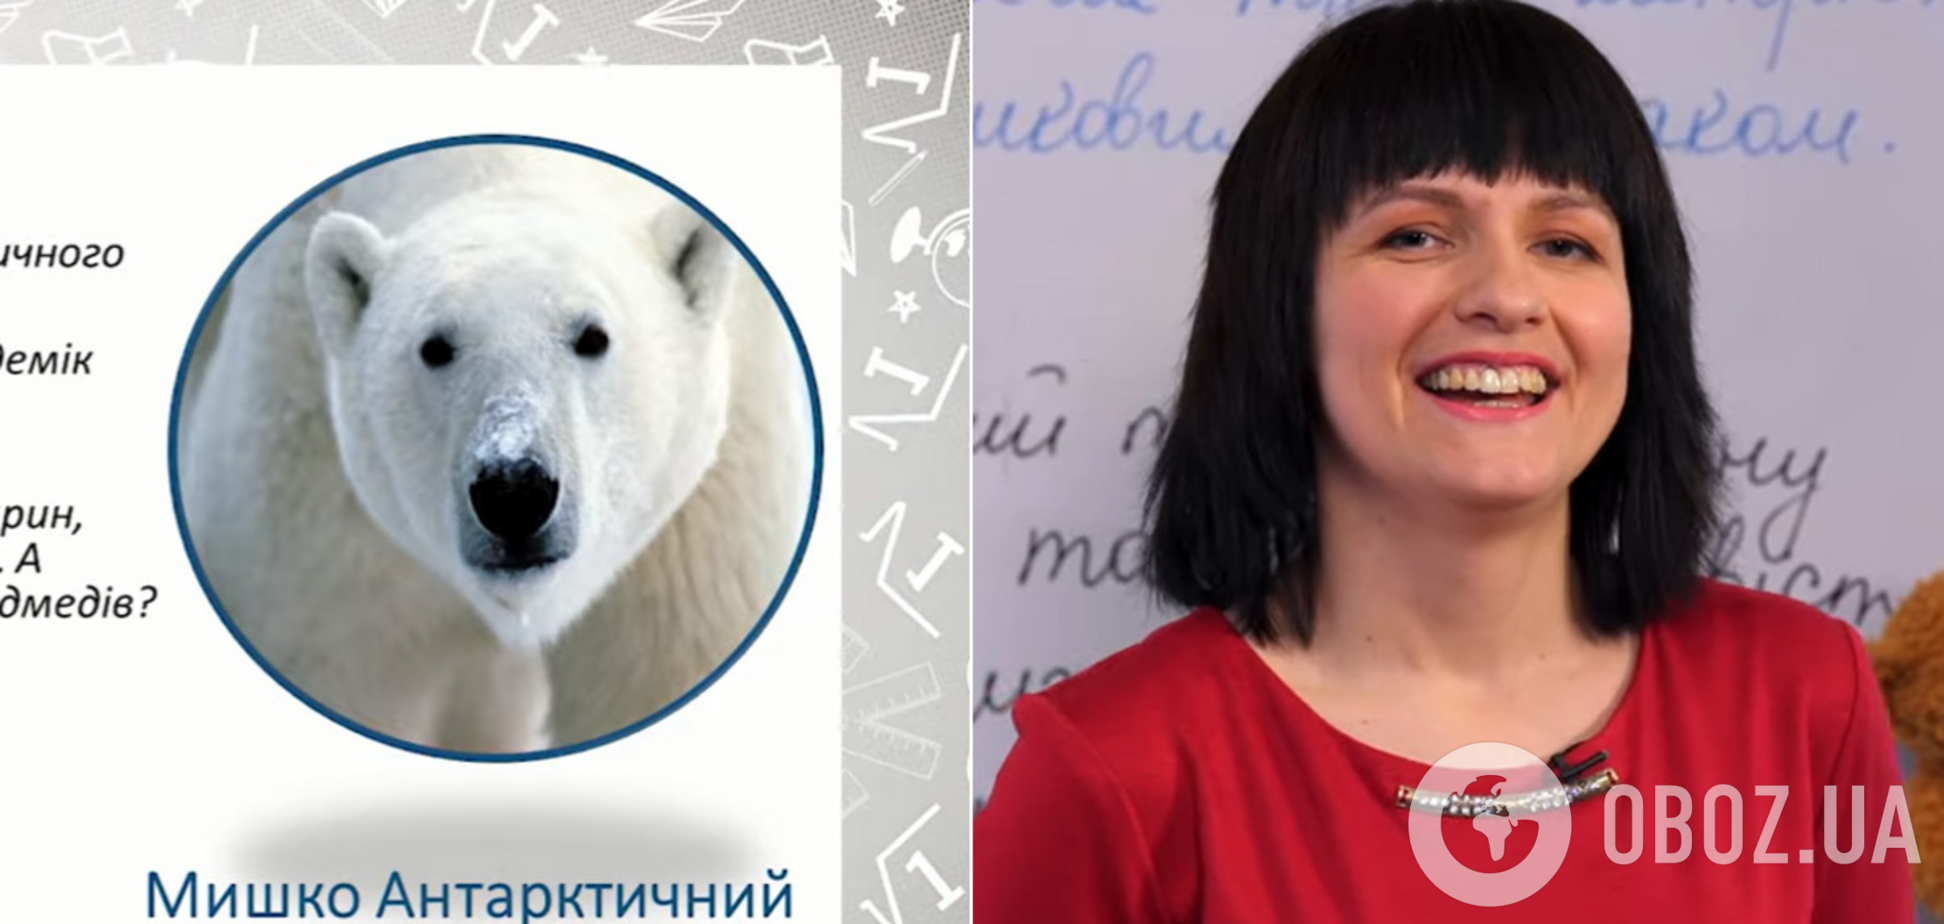 В эфире 'Всеукраинской школы онлайн' белого медведя 'переселили' в Антарктиду. Курьезное видео